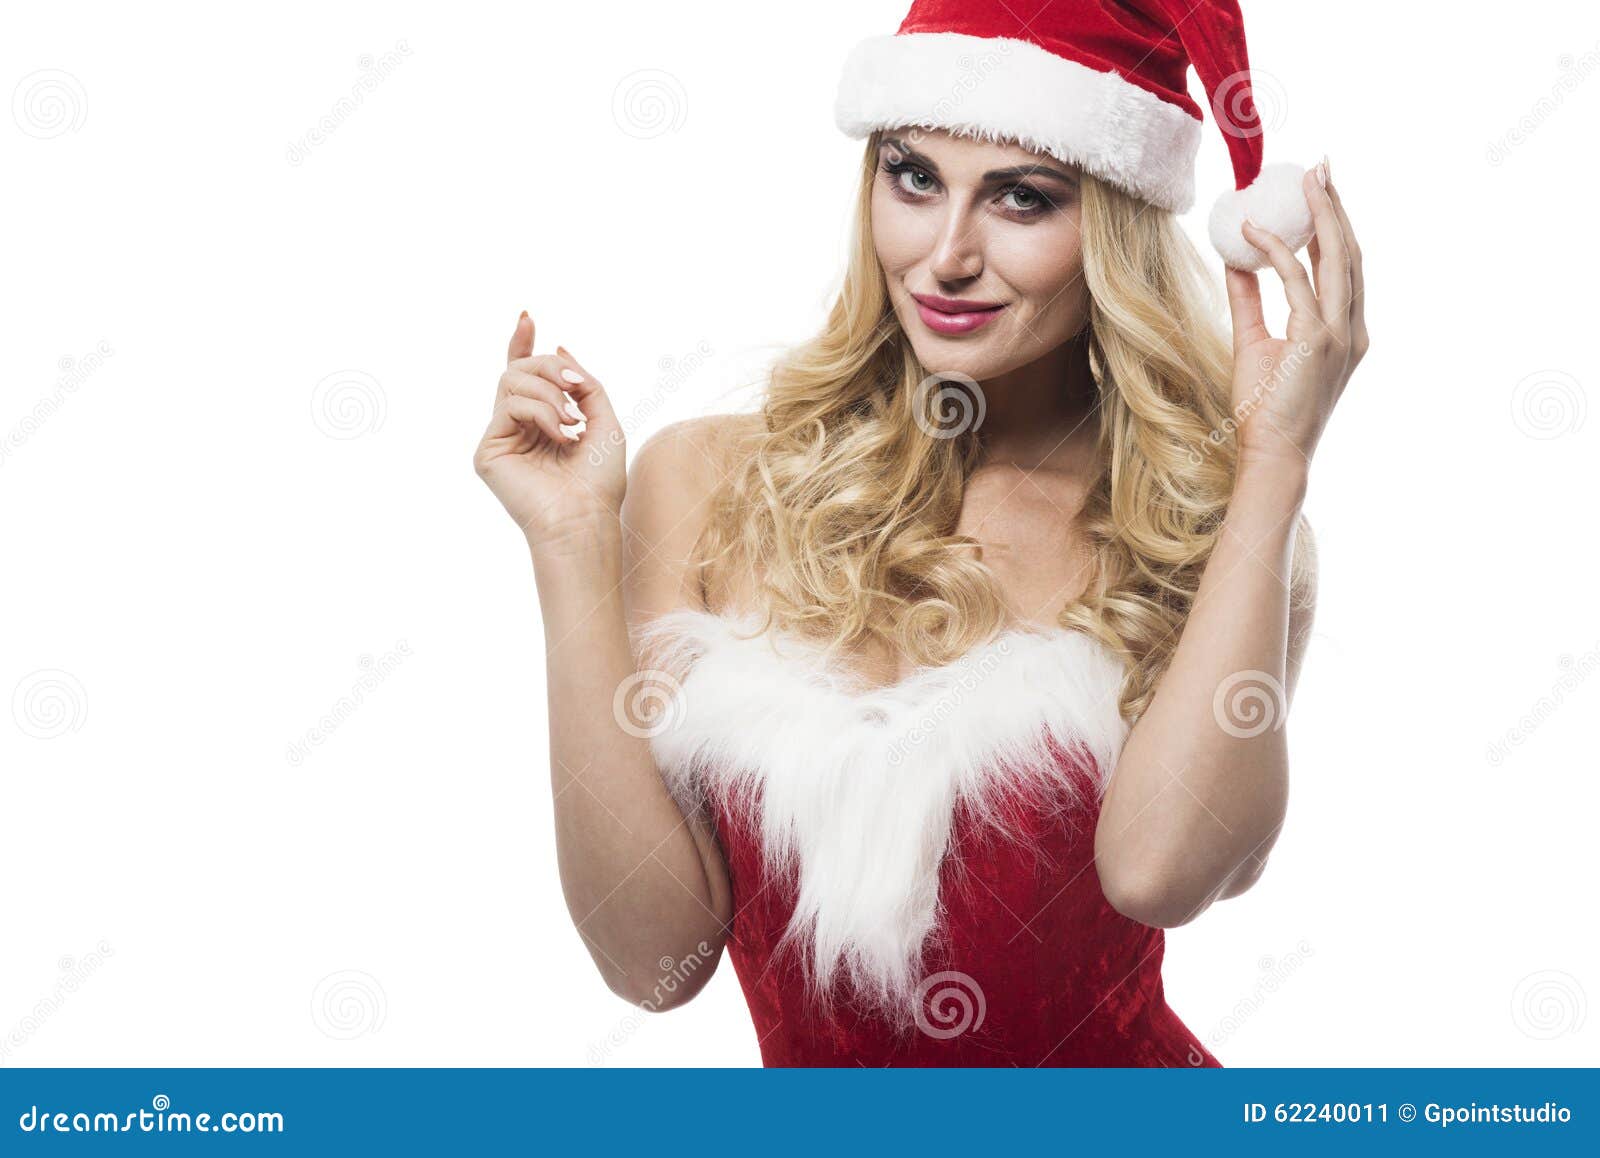 Santa stock image. Image of fashion, copy, model, luxury 62240011